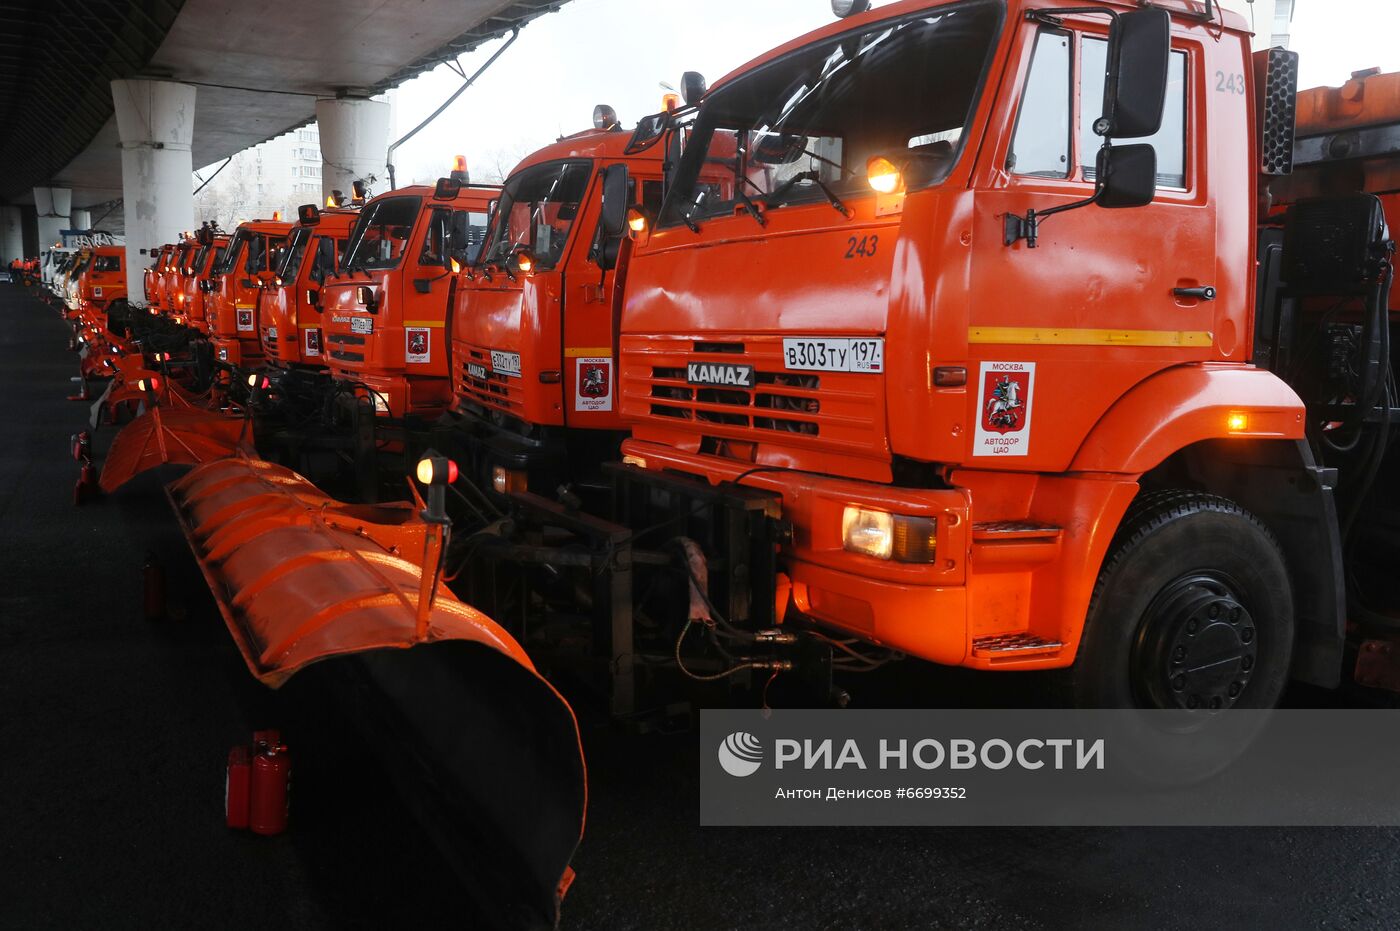 Демонстрация готовности коммунальных служб Москвы к зимнему сезону